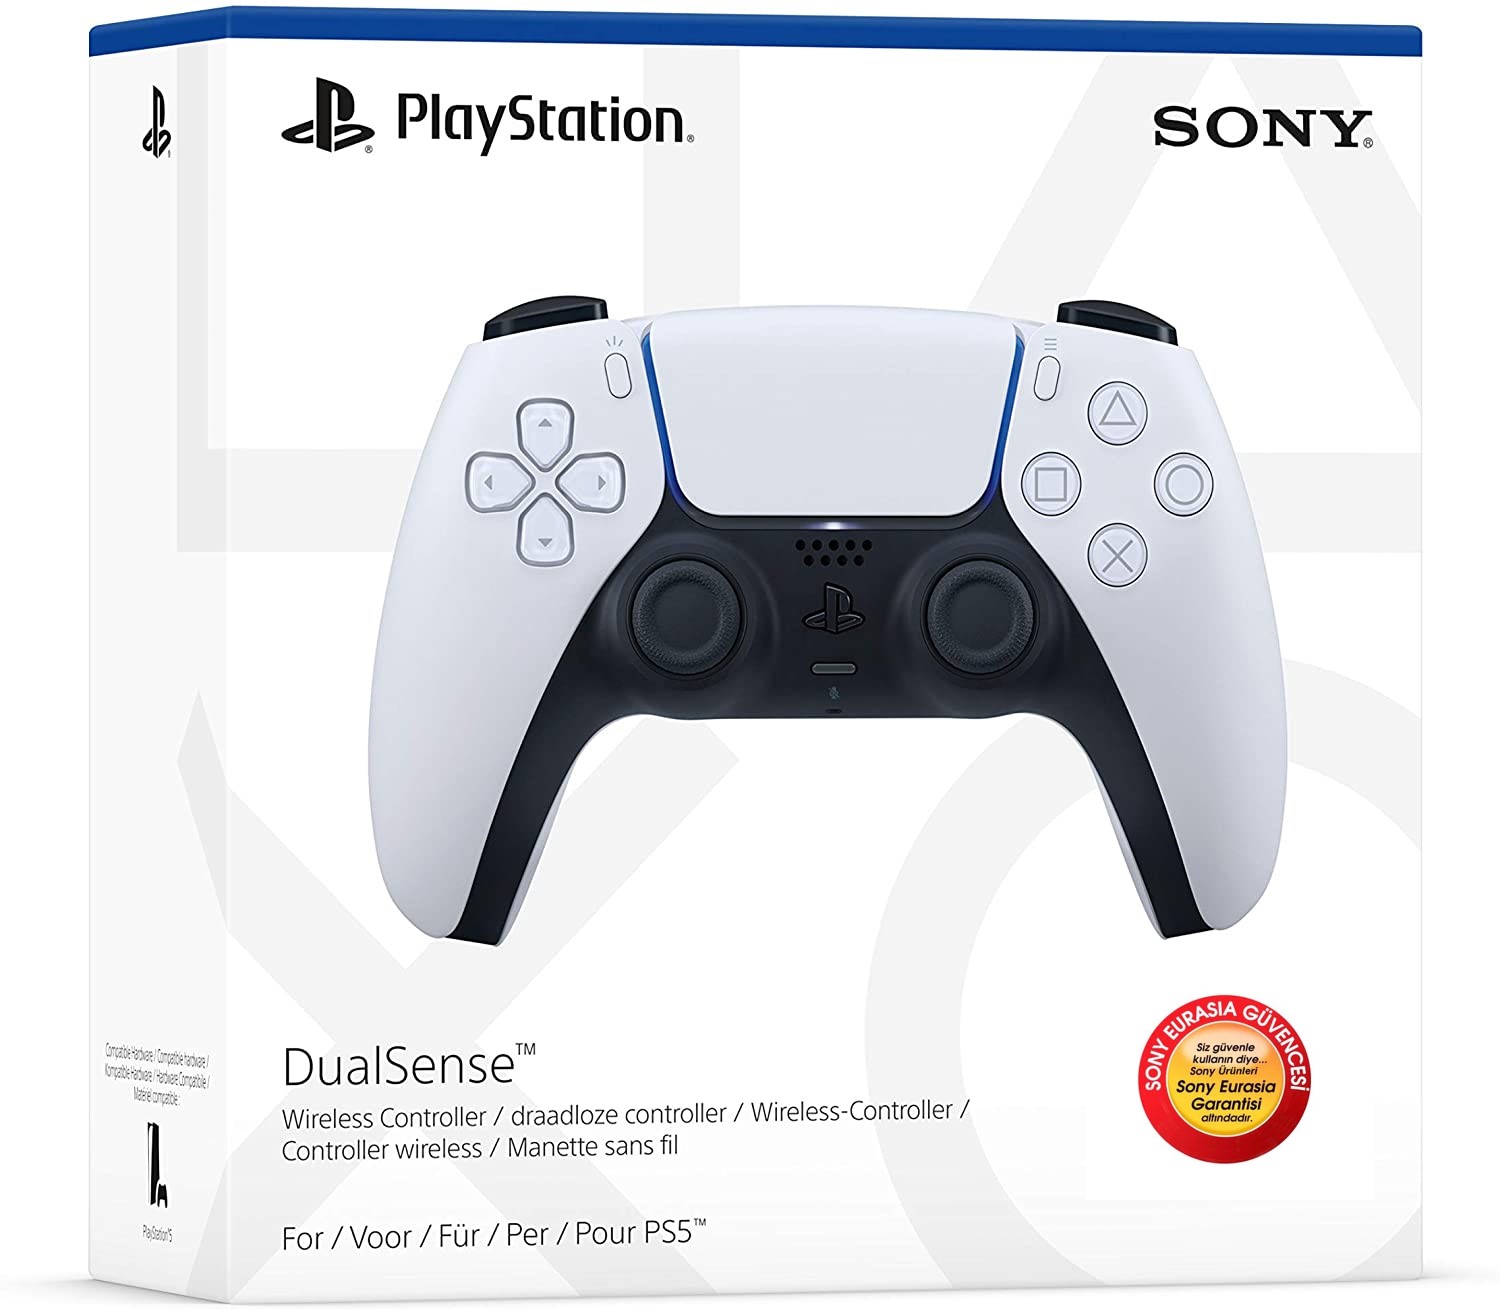 Sony PS5 Dualsense Controller (Sony Eurasia Garantili)